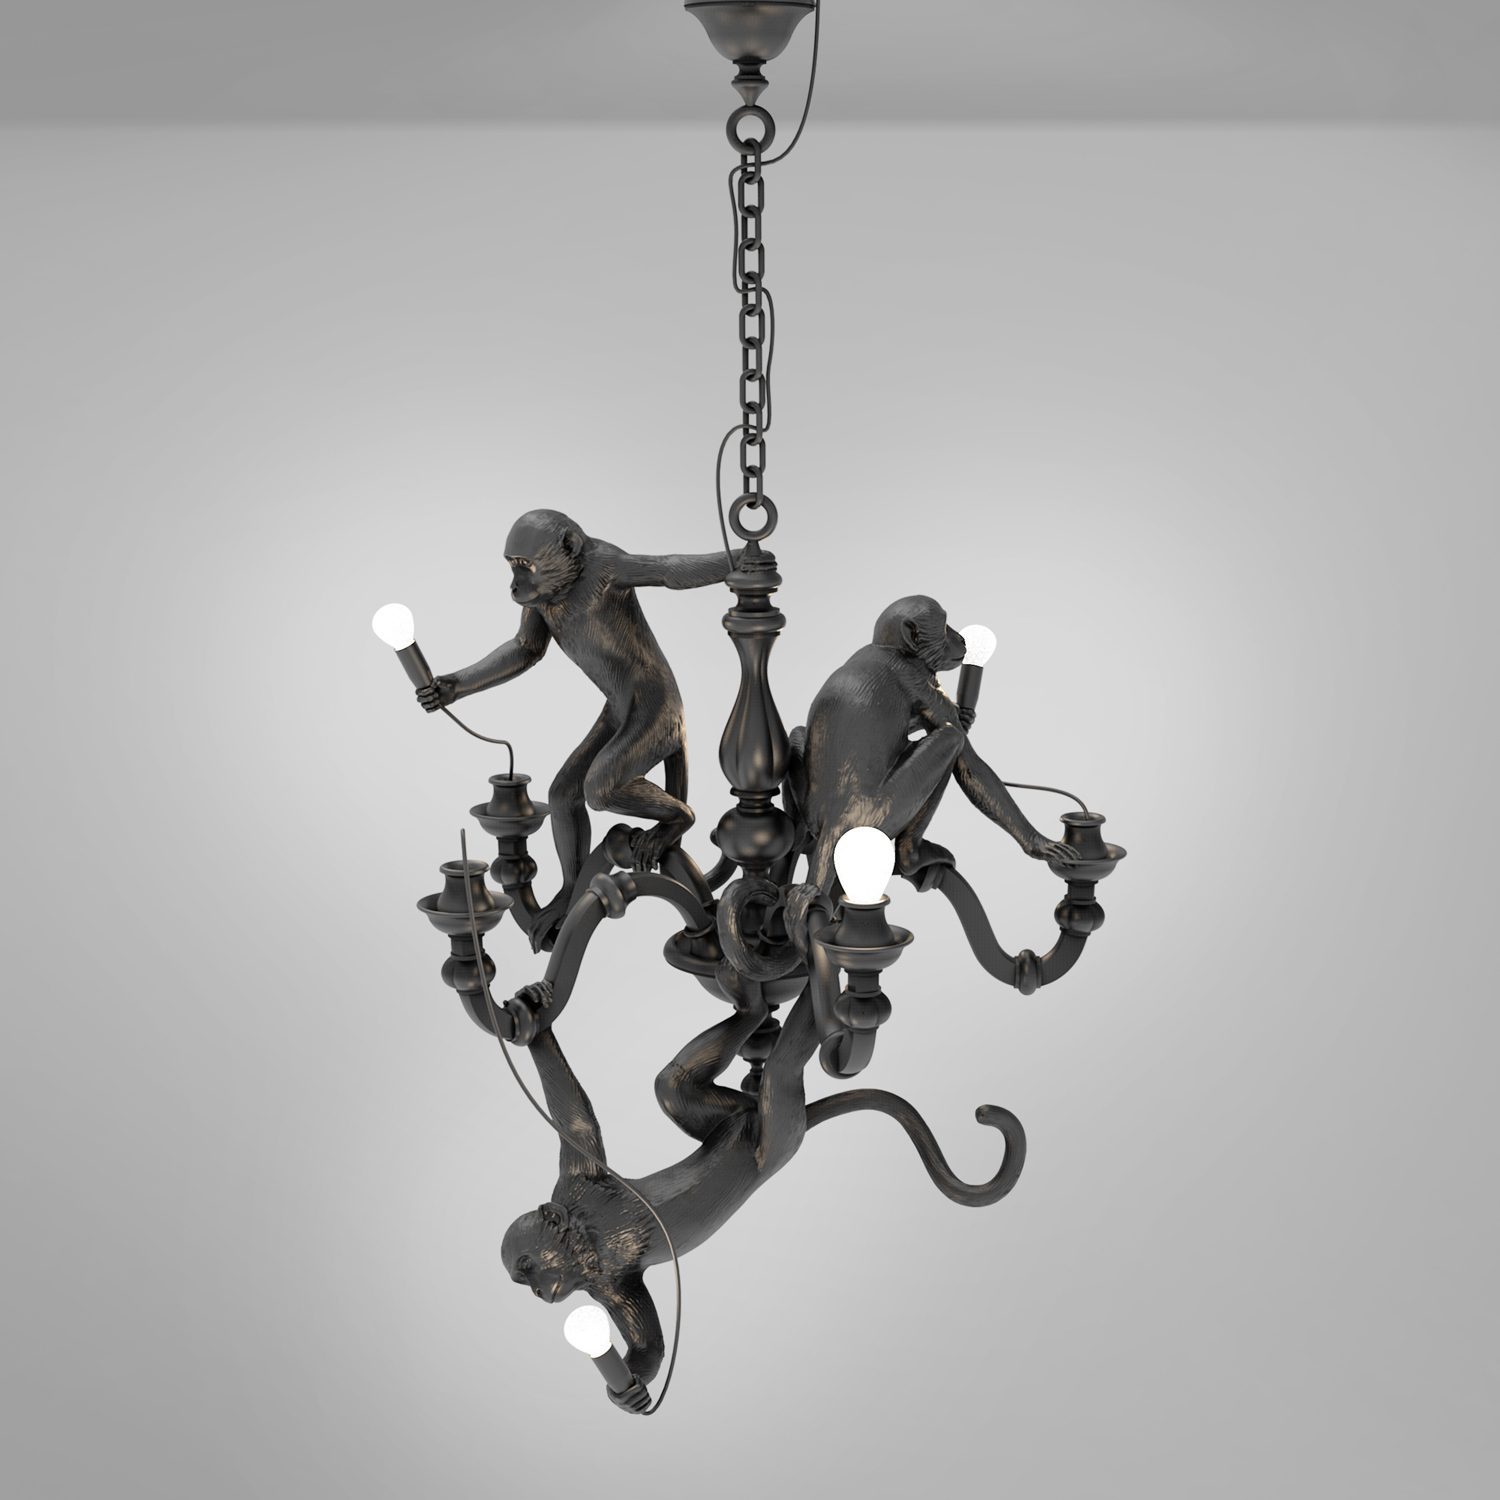 Seletti monkey chandelier